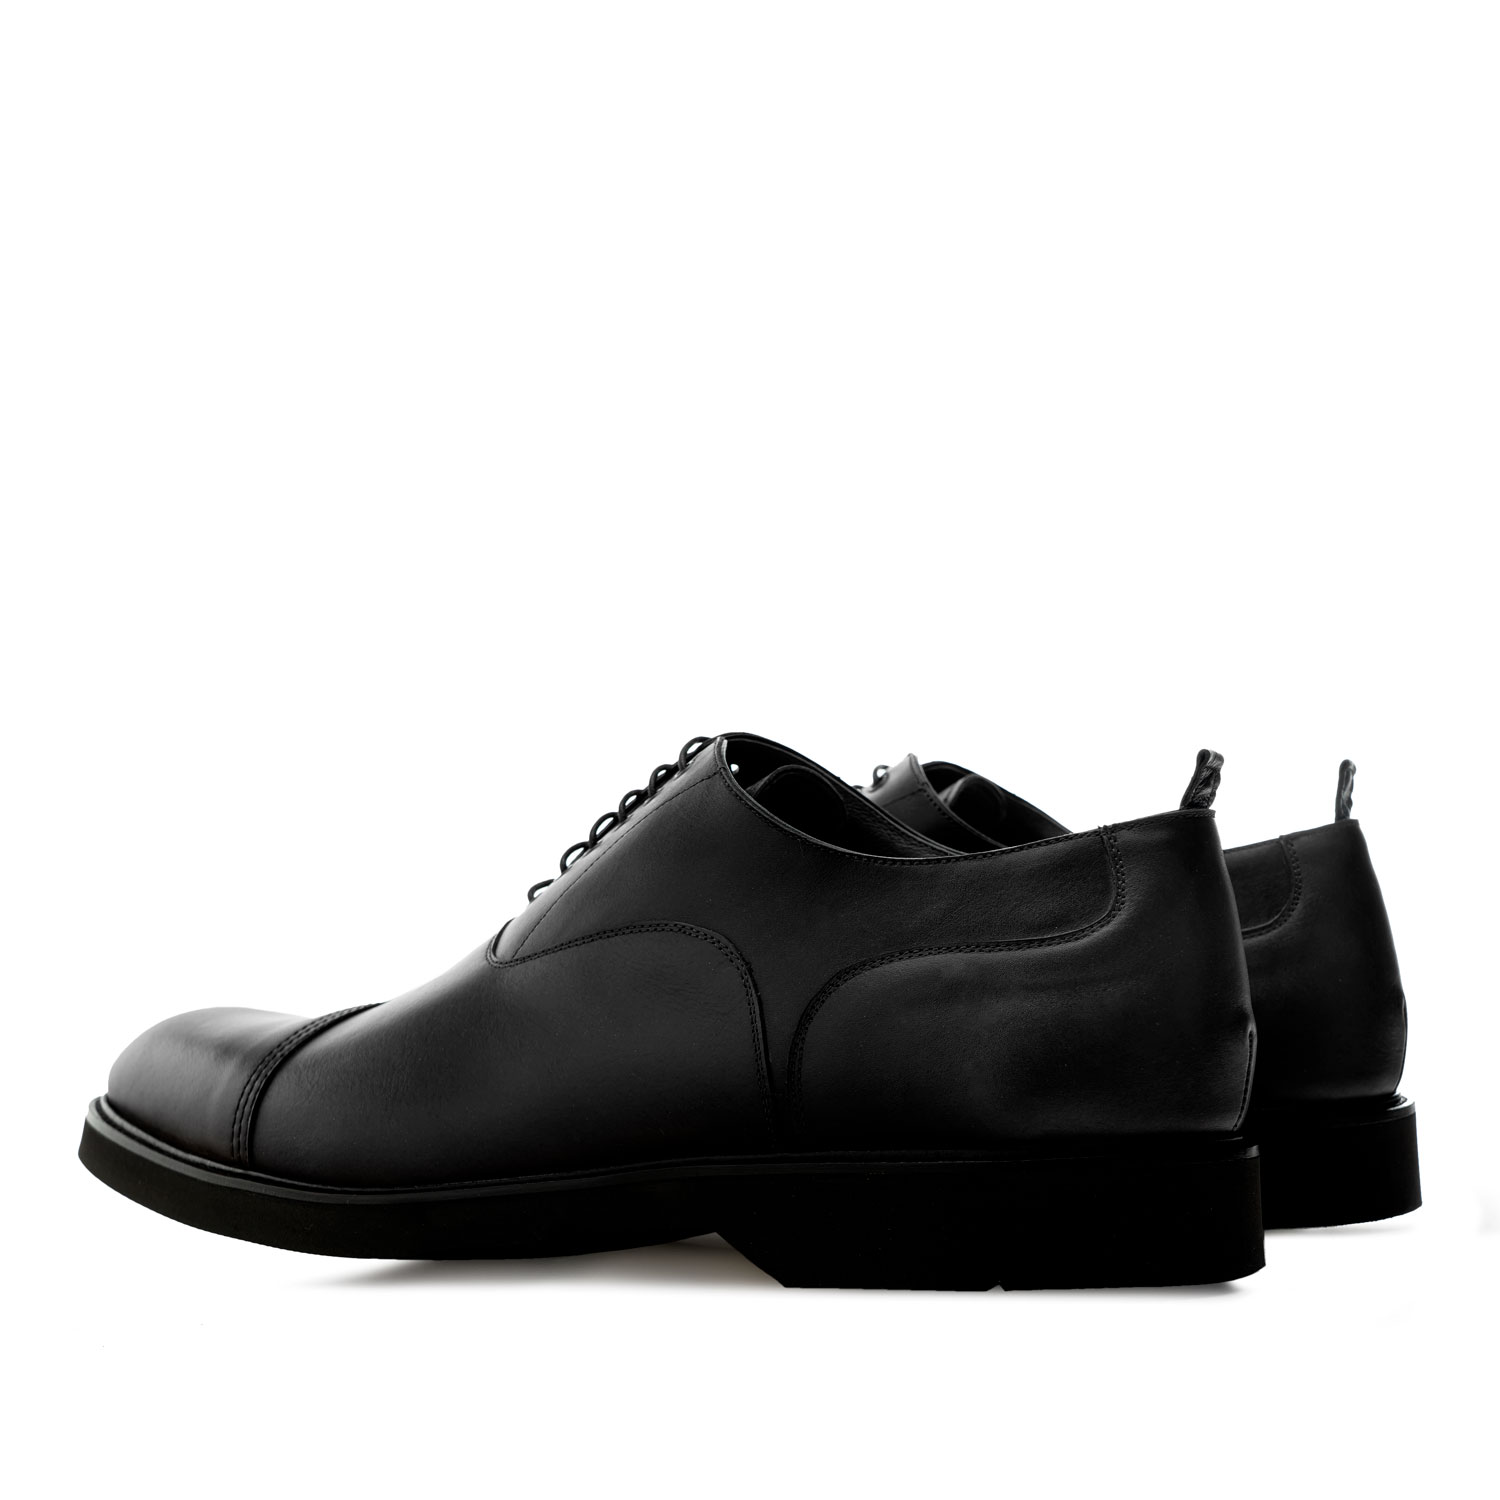 Herrenschuhe im Oxford-Stil aus schwarzem Leder 